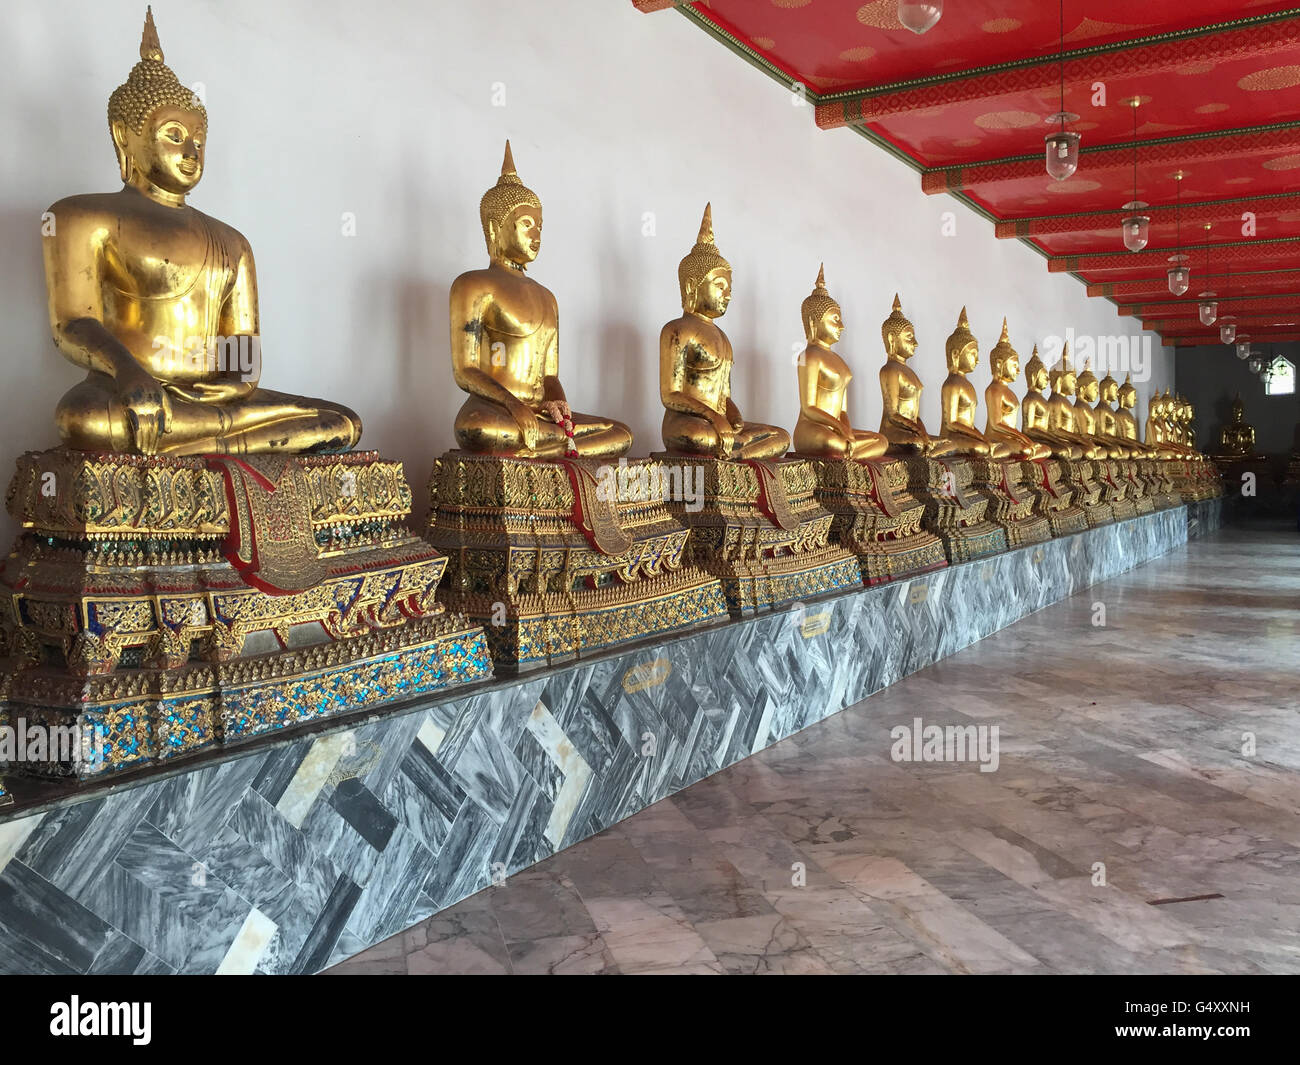 Thaïlande, Bangkok, Centralthailand Buddhastatuen, dans le temple bouddhiste Wat Pho royal dans le centre de la vieille ville historique Banque D'Images